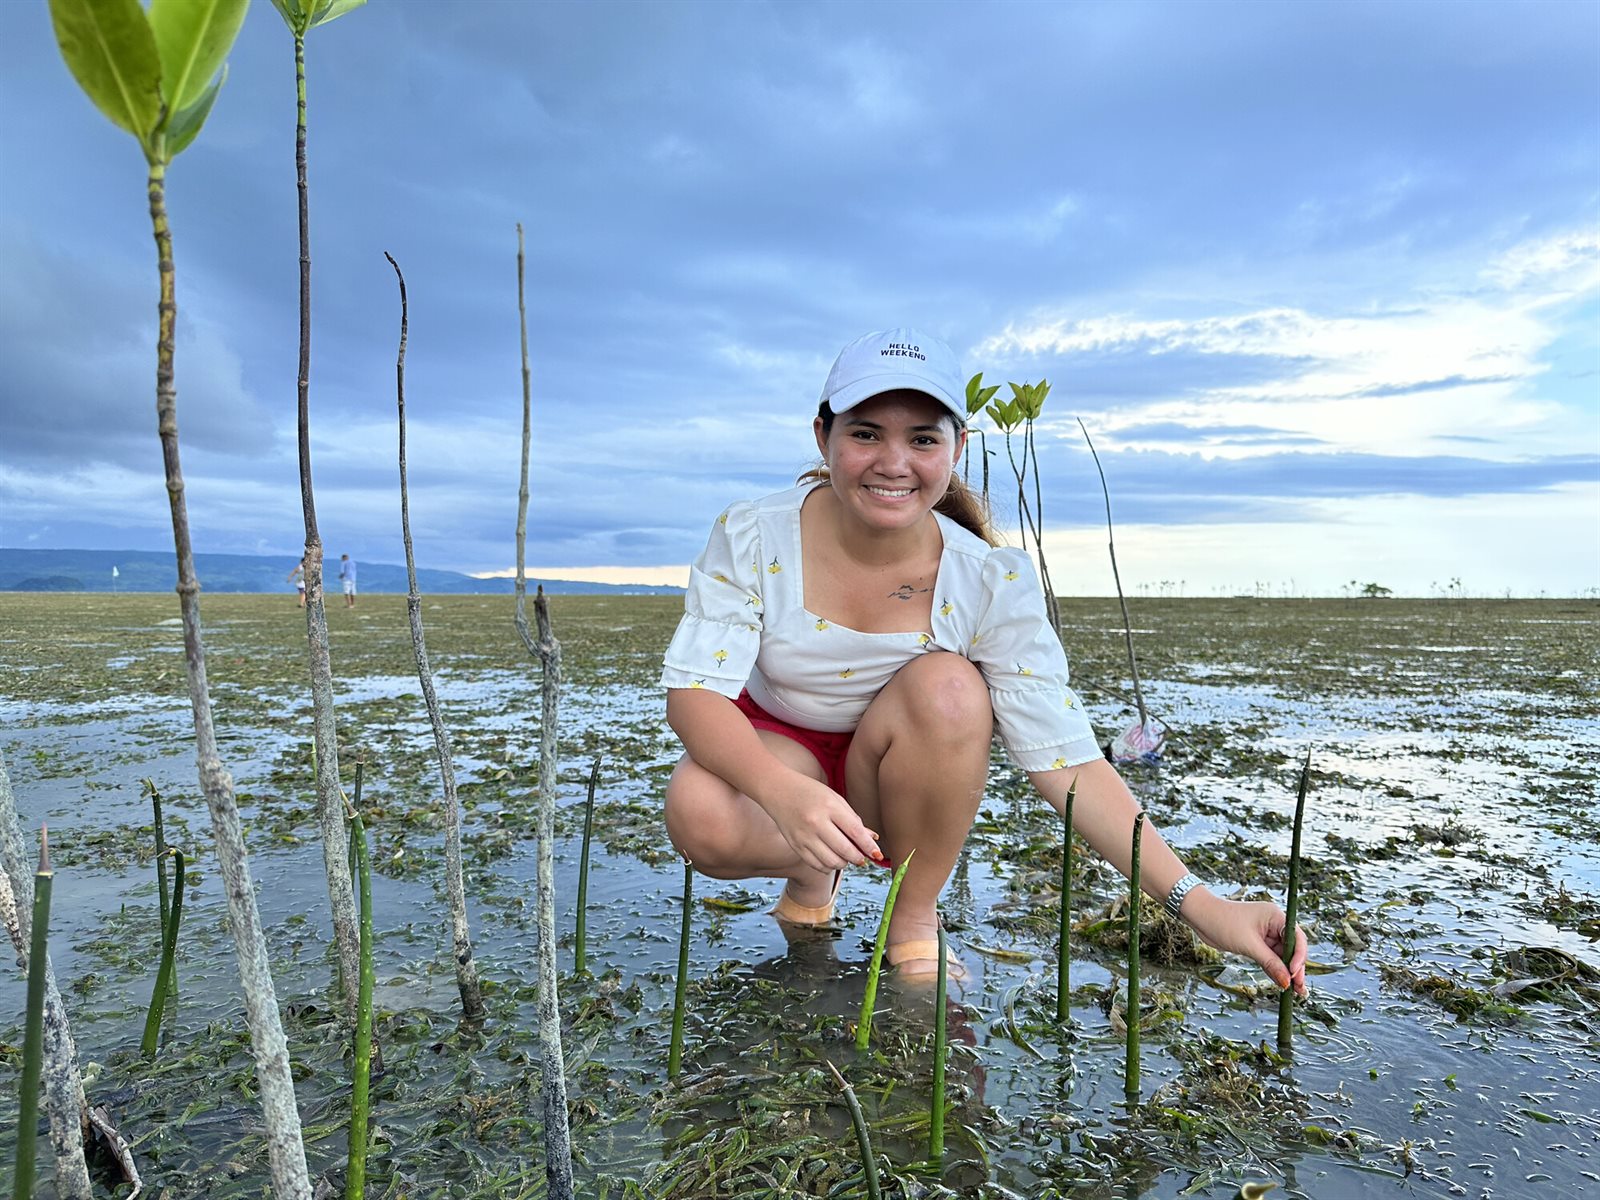 Marinel plant mangrovebomen bij haar geboortedorp. Deze vormen een groen schild tegen overstromingen en extreem weer. 